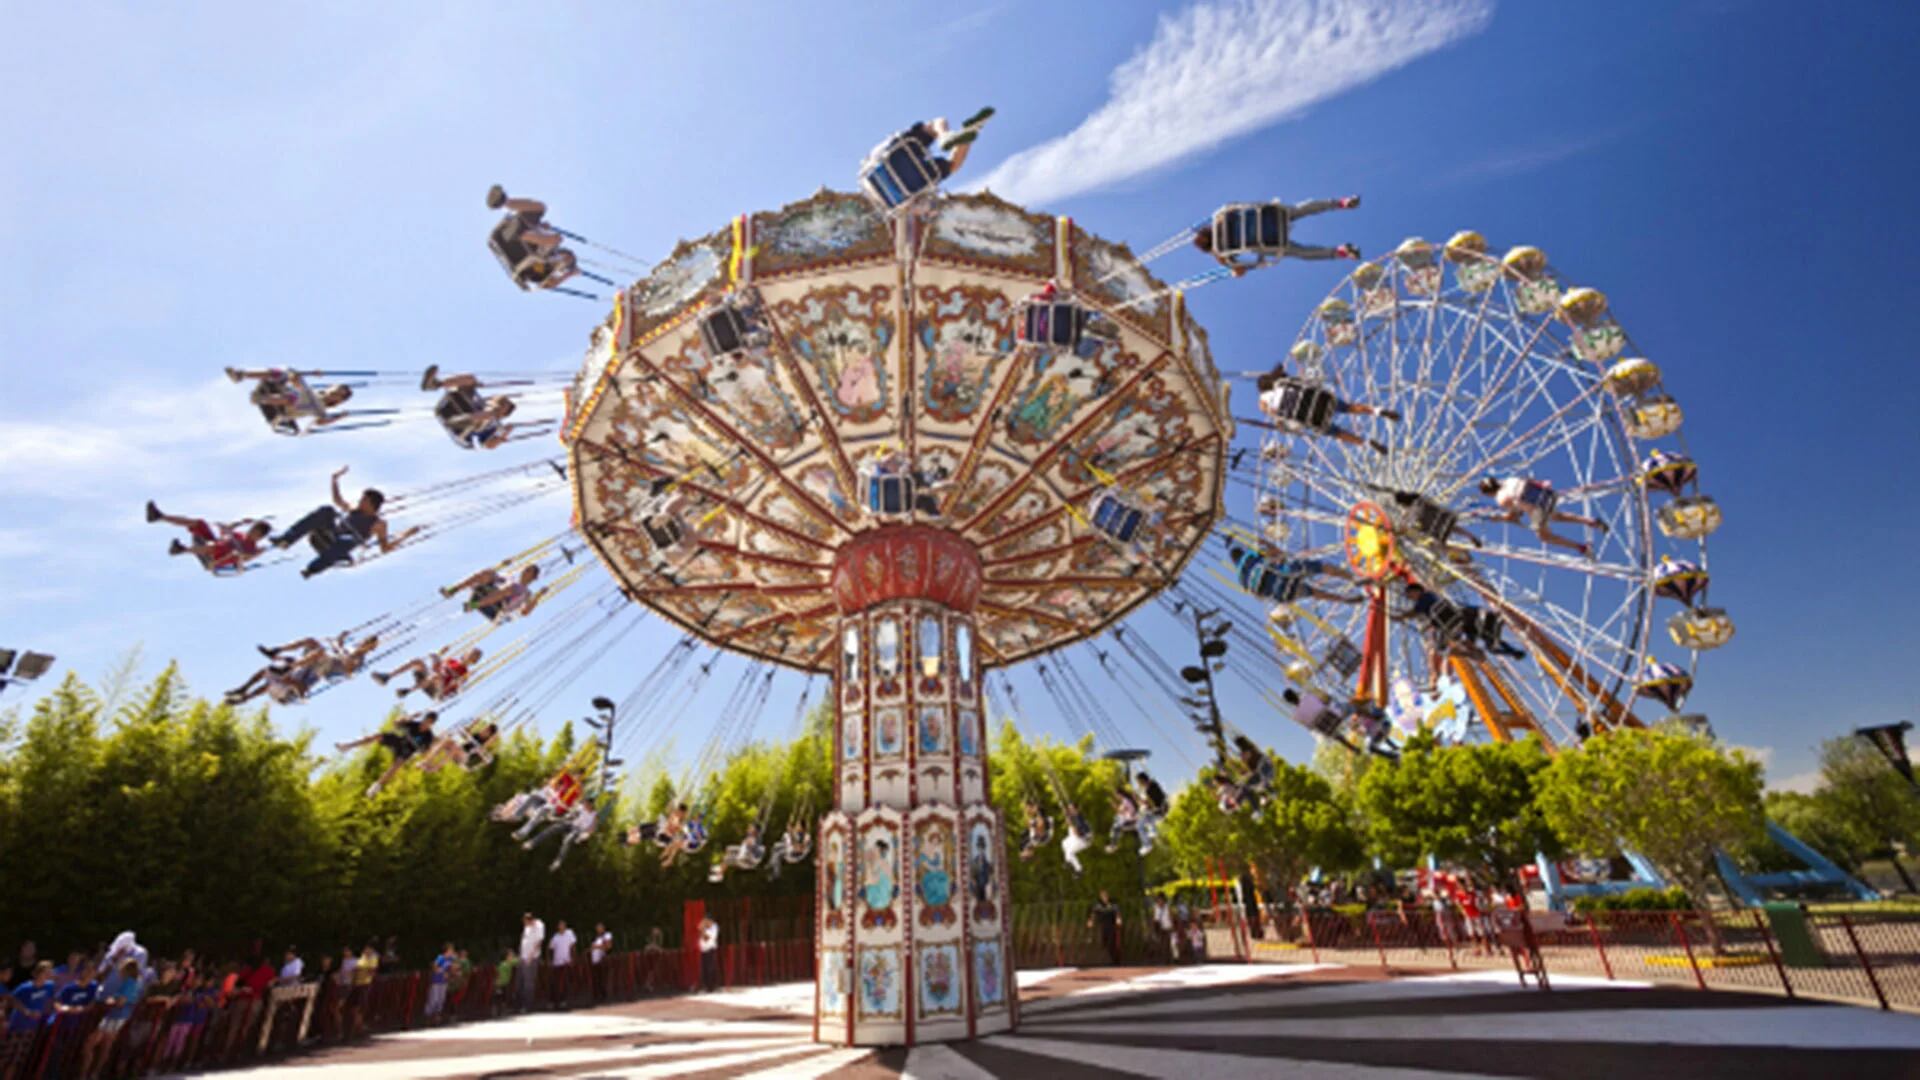 El Parque de la Costa es una de las opciones próximas a la Ciudad de Buenos Aires que garantiza adrenalina y diversión